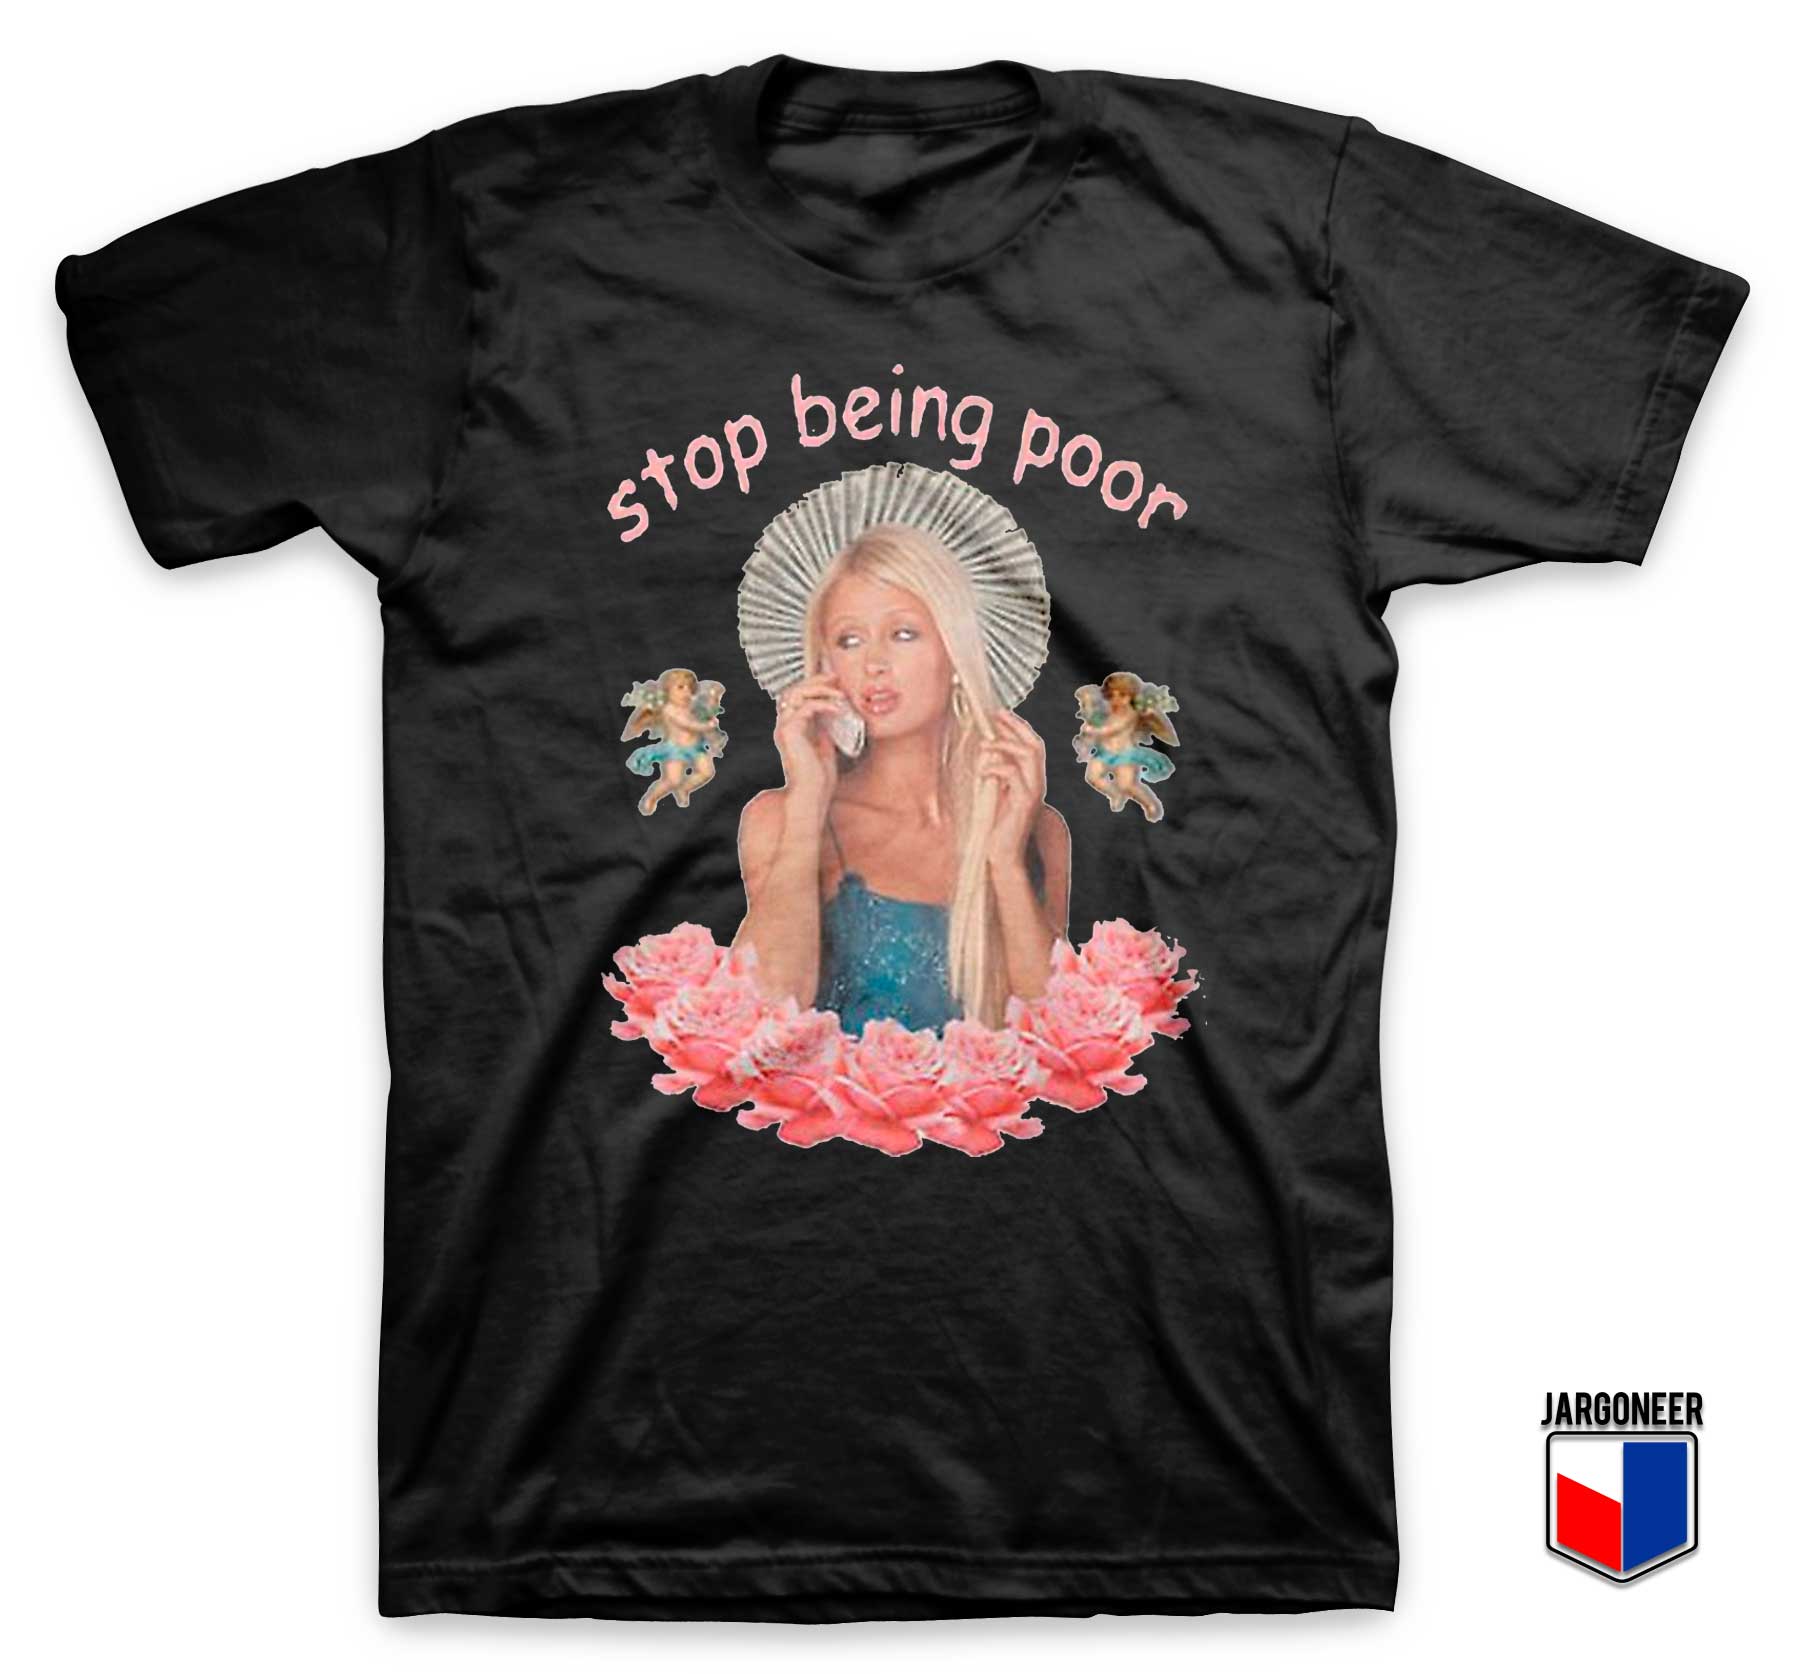 Paris Hilton Stop Being Poor T Shirt - Shop Unique Graphic Cool Shirt Designs